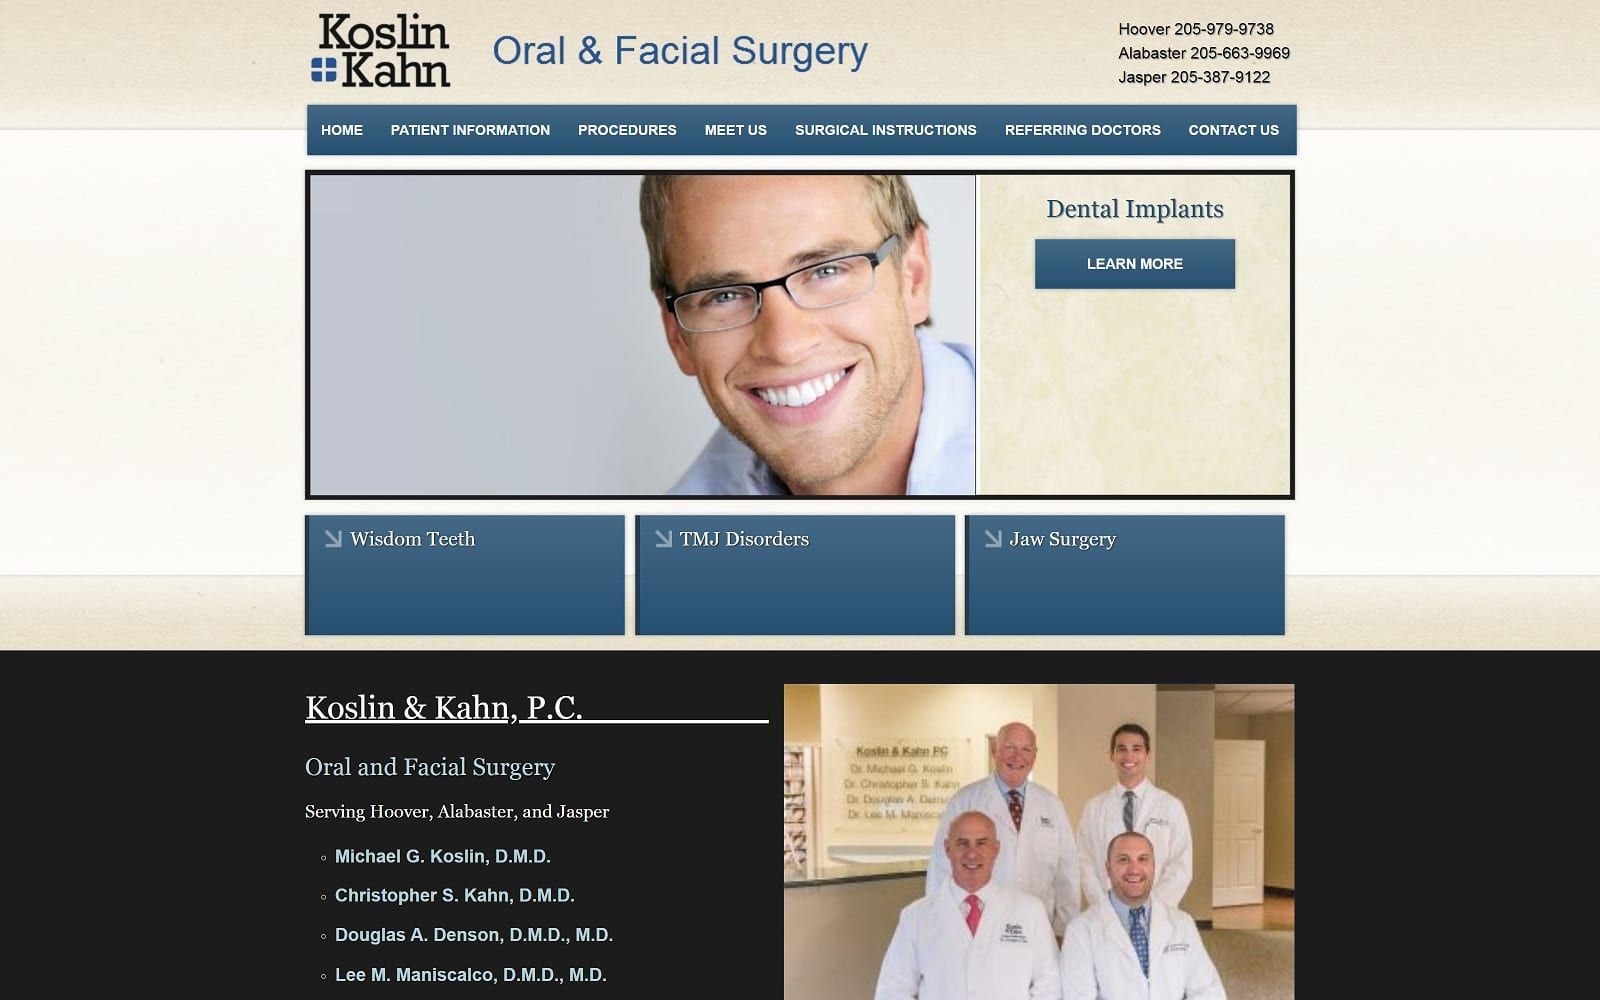 The screenshot of koslin & kahn oral and facial surgery koslinkahn. Com website